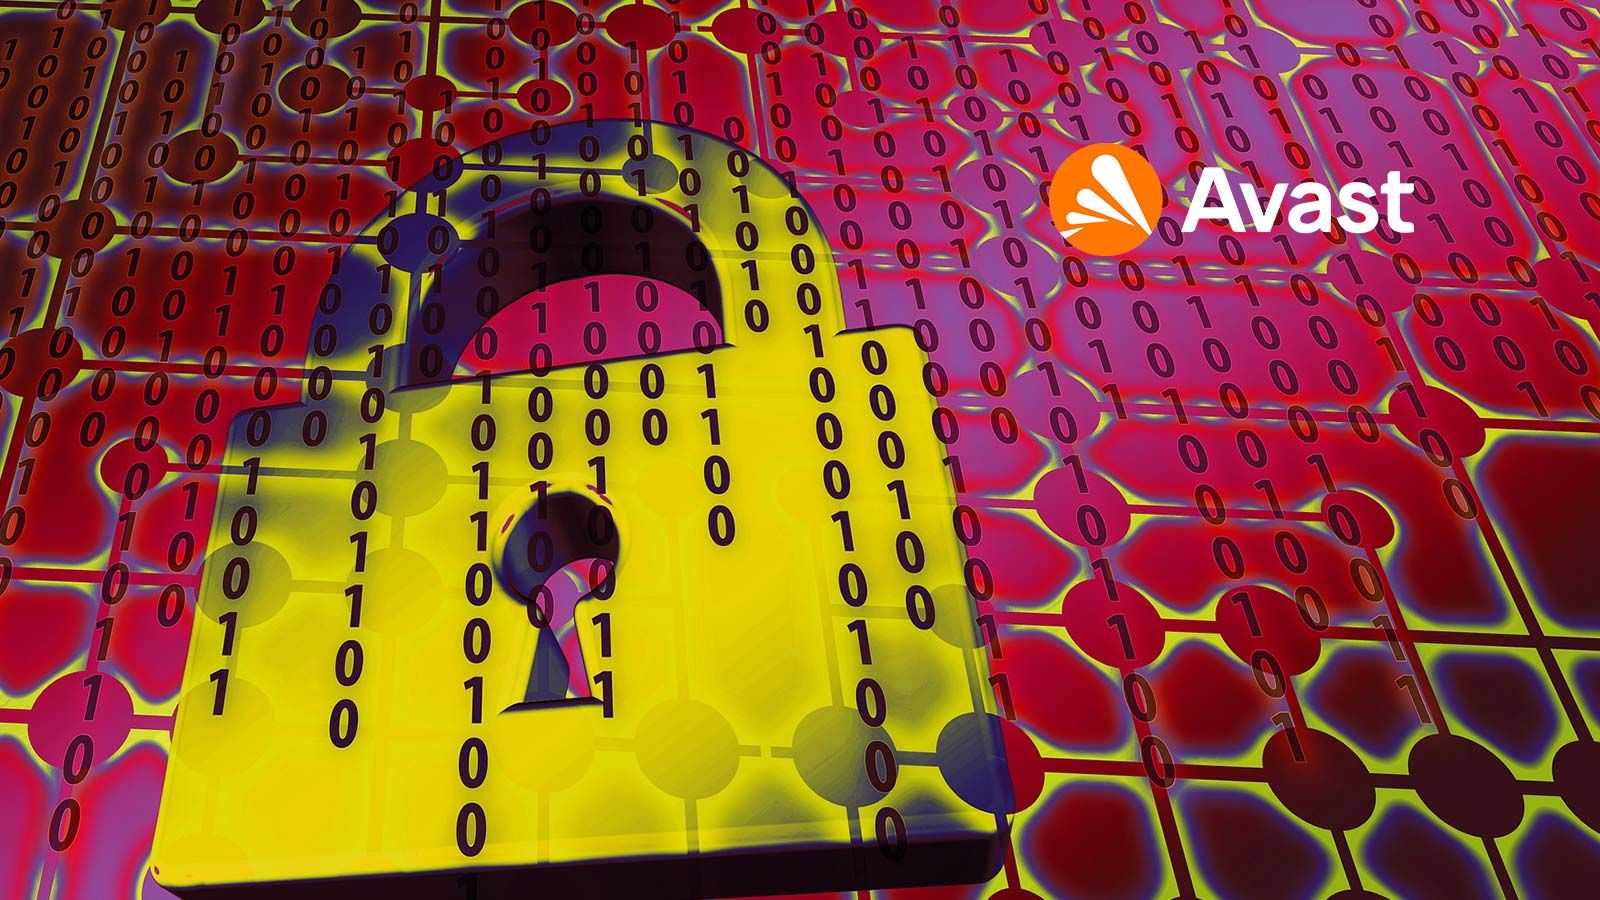 Avast actualiza su extensión de navegador con funciones de protección de la privacidad